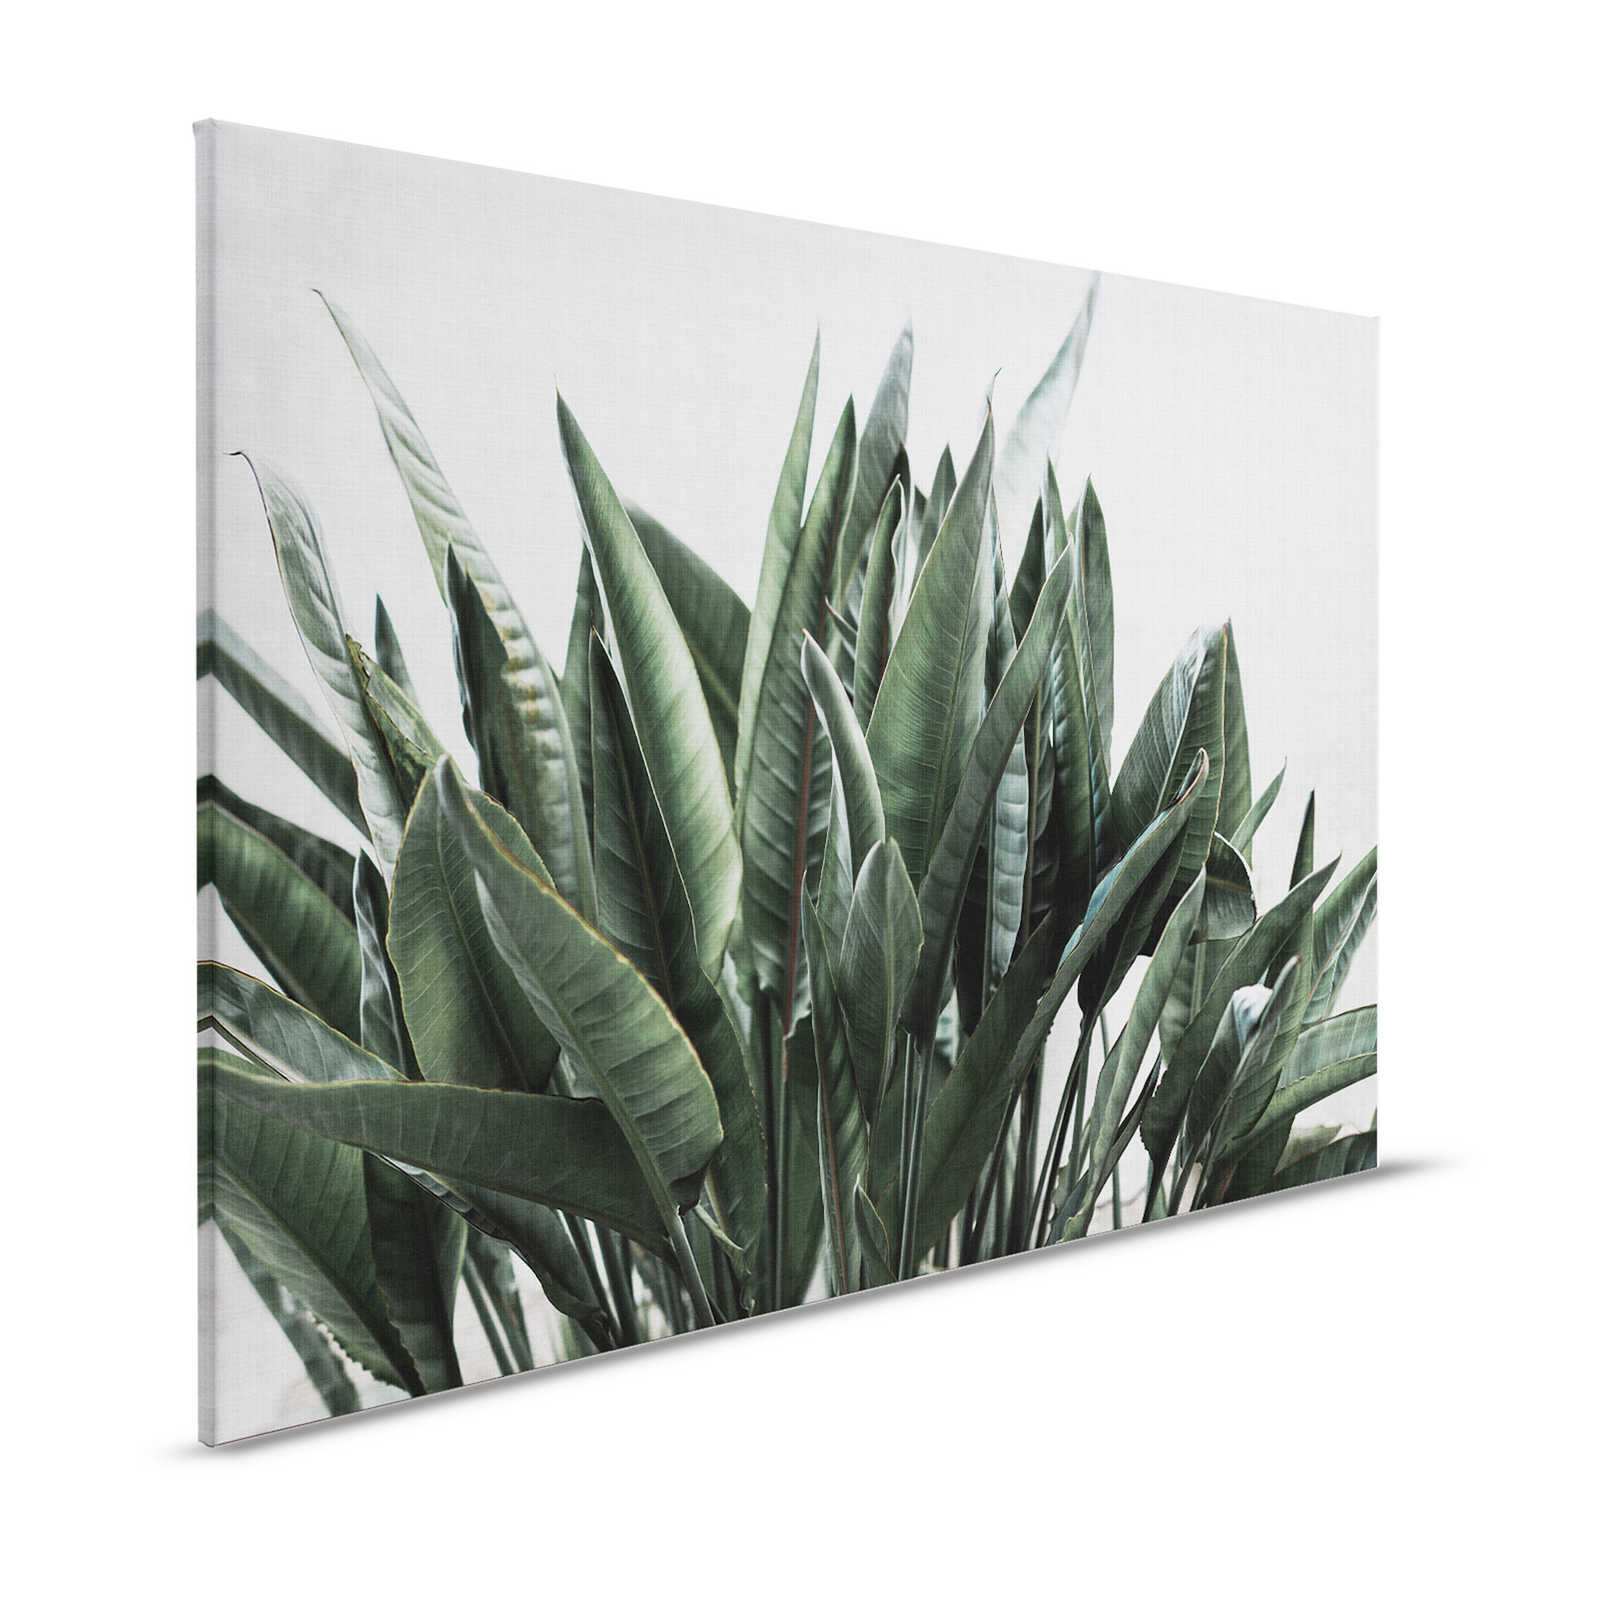 Urban jungle 2 - canvas schilderij met palmbladeren, natuurlijk linnen structuur exotische planten - 1.20 m x 0.80 m
